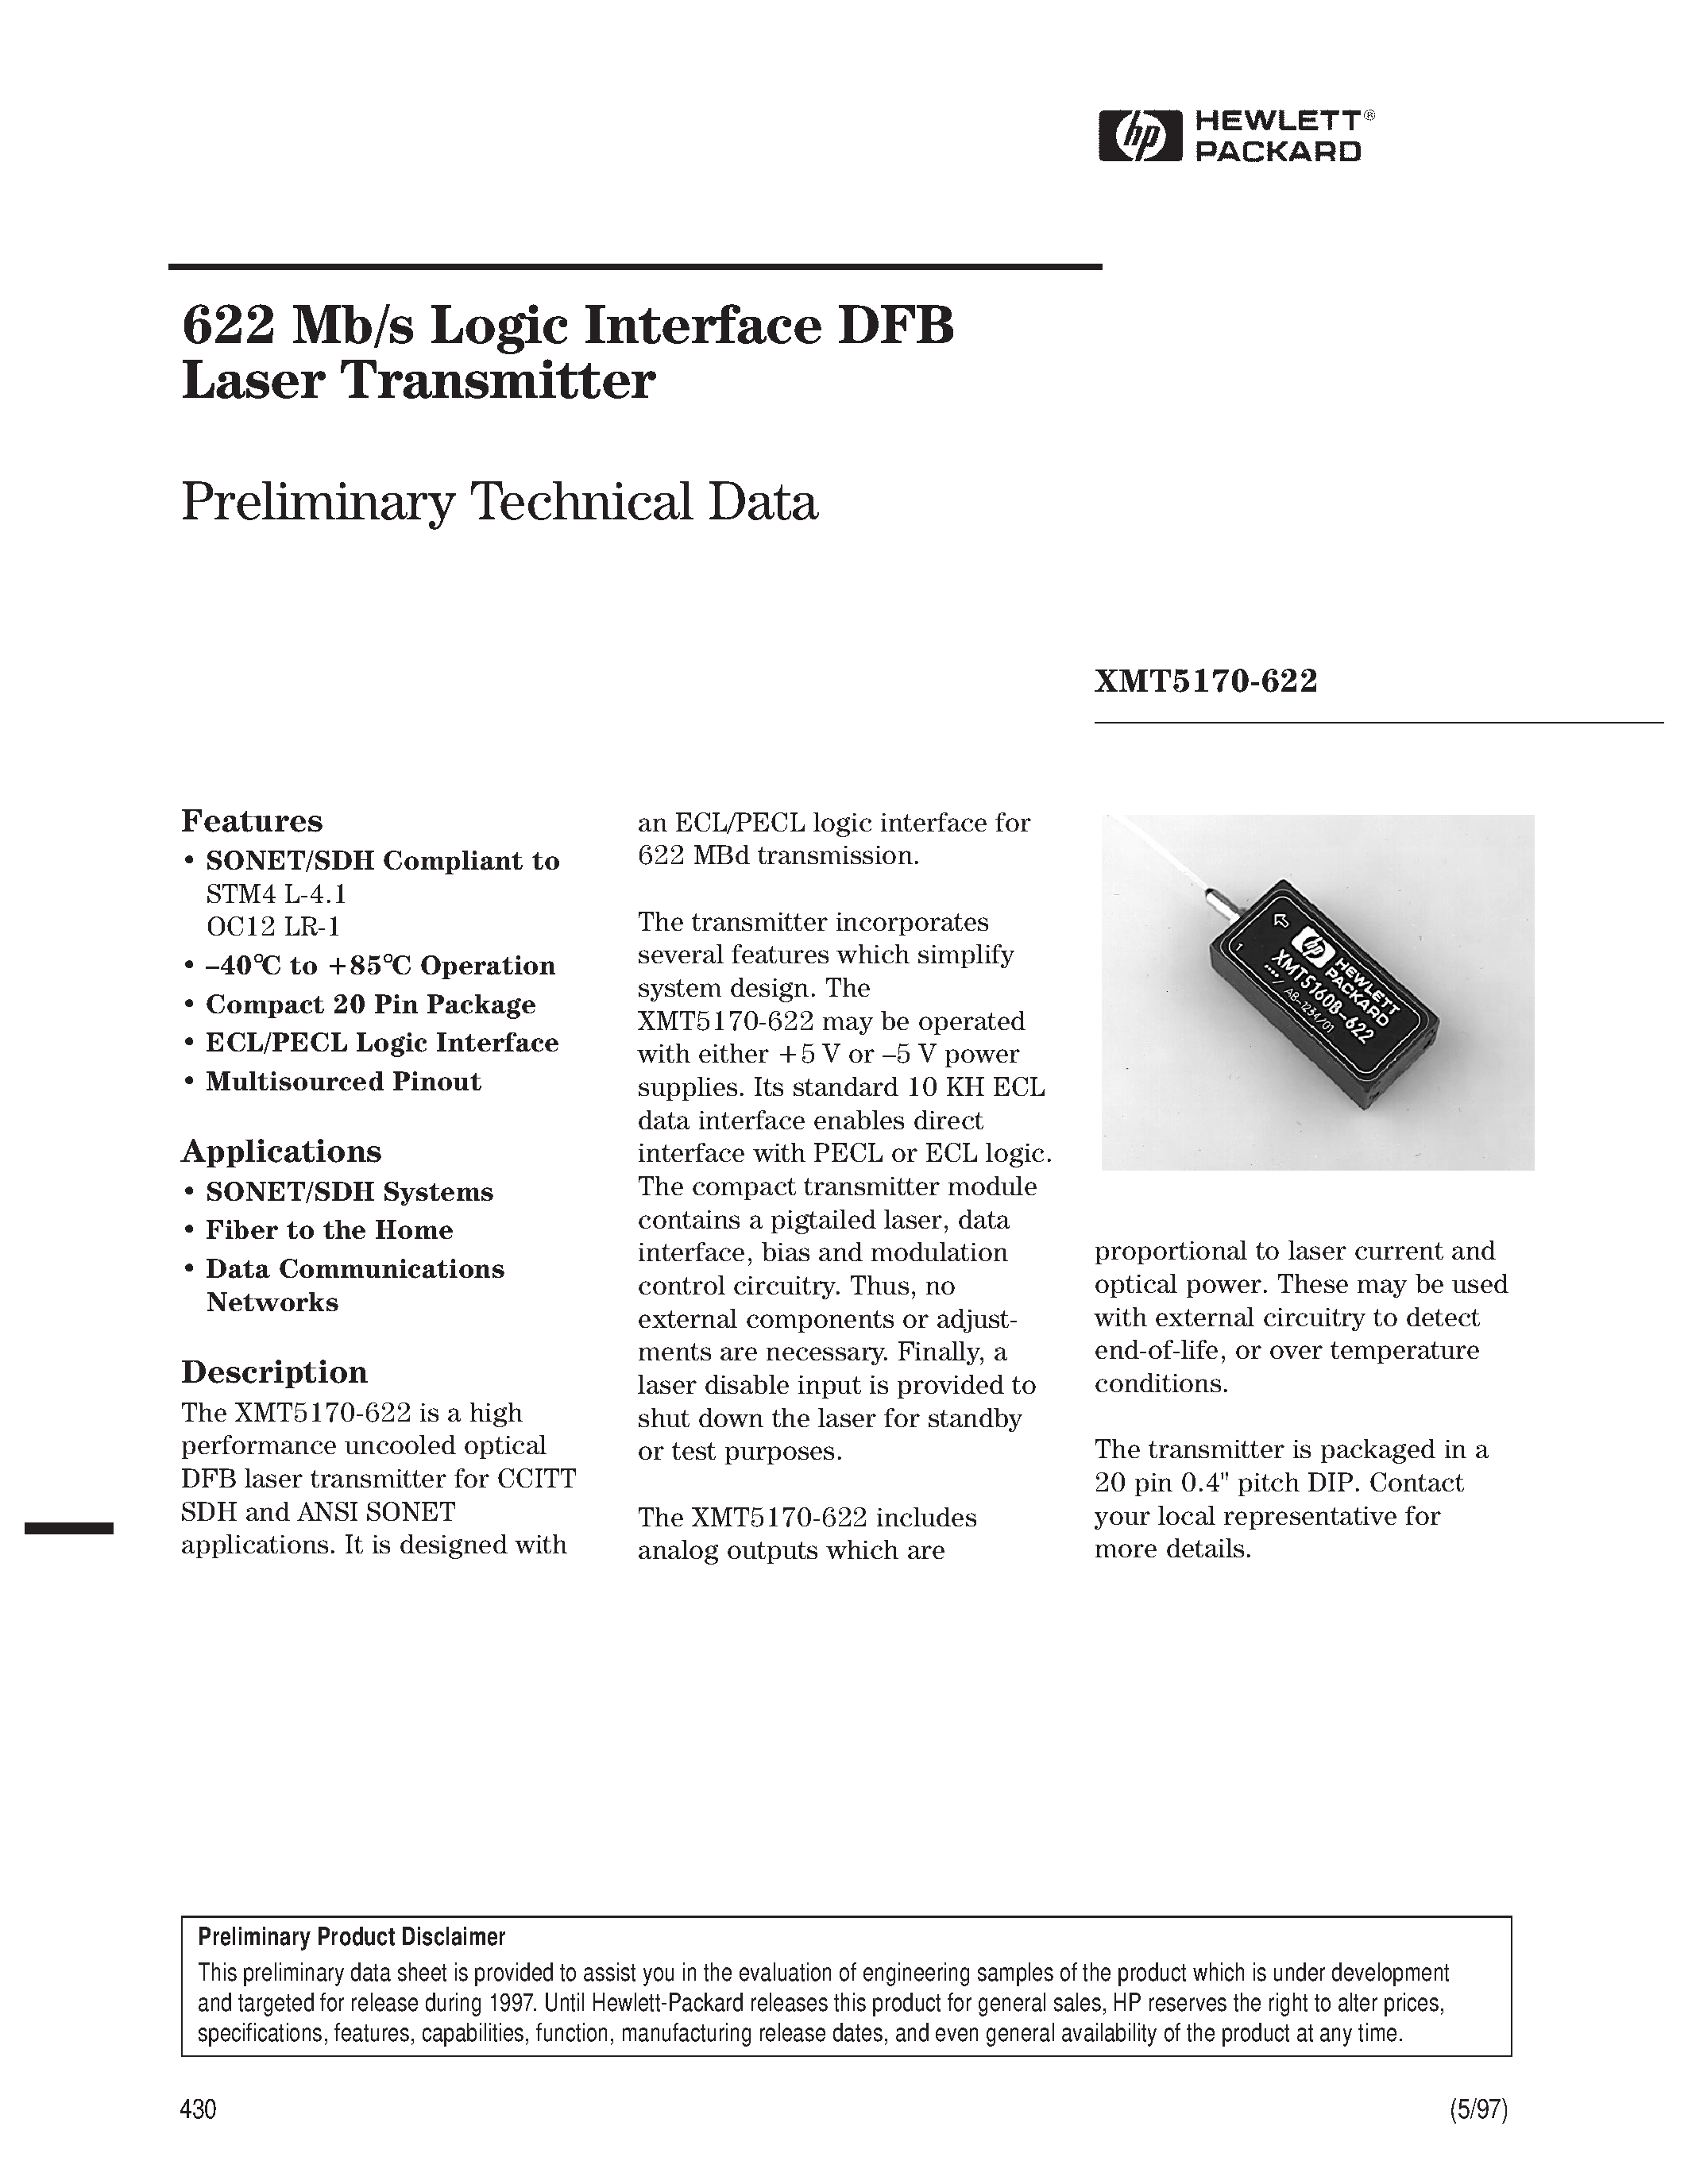 Datasheet XMT5170-622 - 622 Mb/s Logic Interface DFB Laser Transmitter page 1